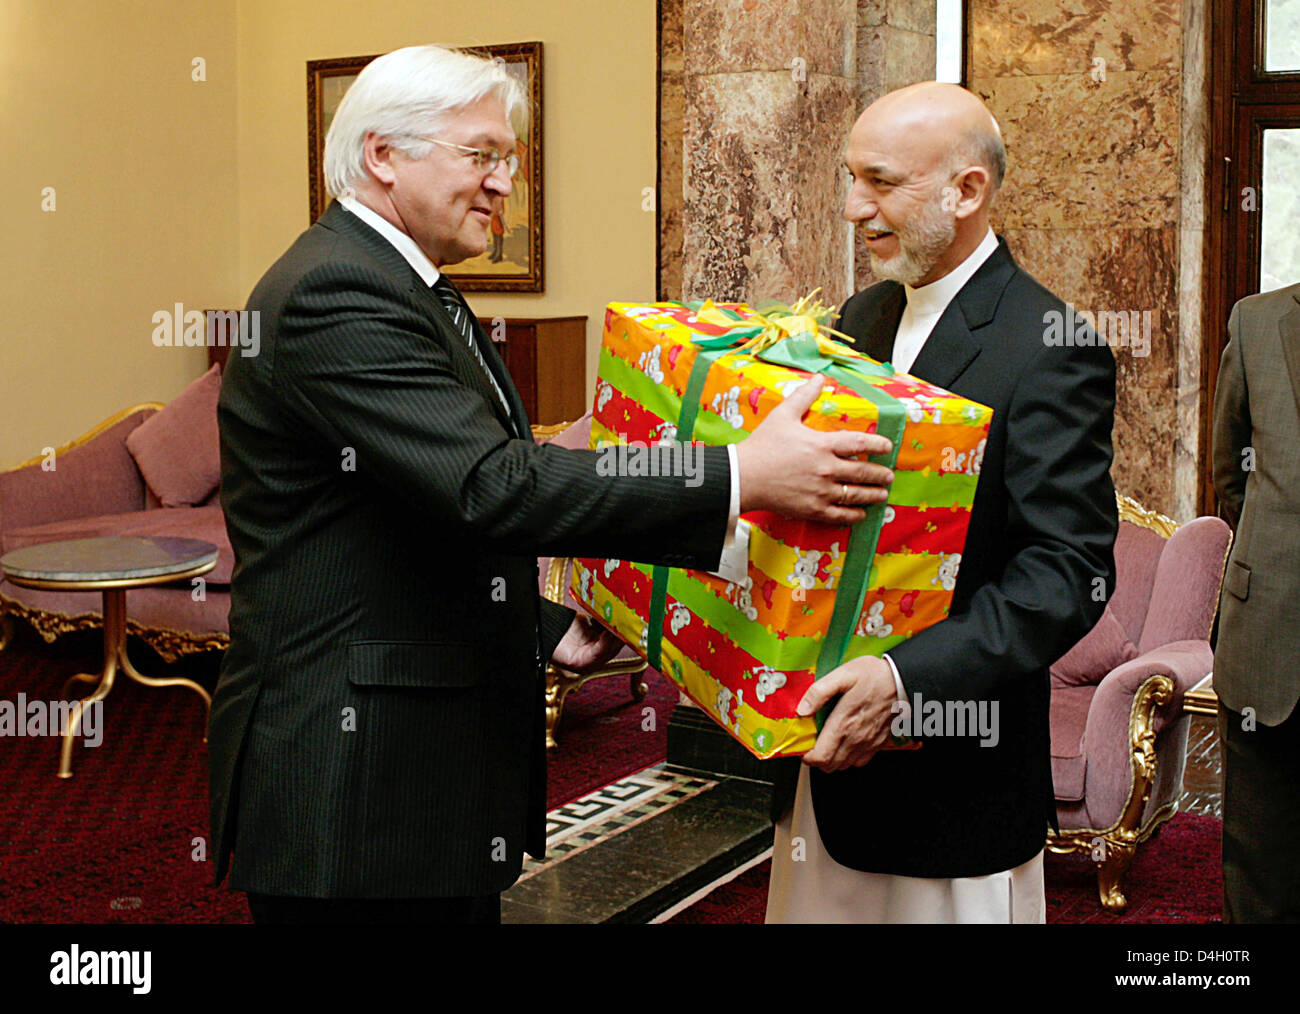 Le ministre allemand des affaires étrangères, Frank-Walter Steinmeier (L) remet un présent pour le président afghan Hamid Karzai lors d'une réunion à Kaboul, Afghanistan, le 26 juillet 2008. Steinmeier a donné un Karzaï présente pour son fils. Photo : Ute Grabowsky Banque D'Images